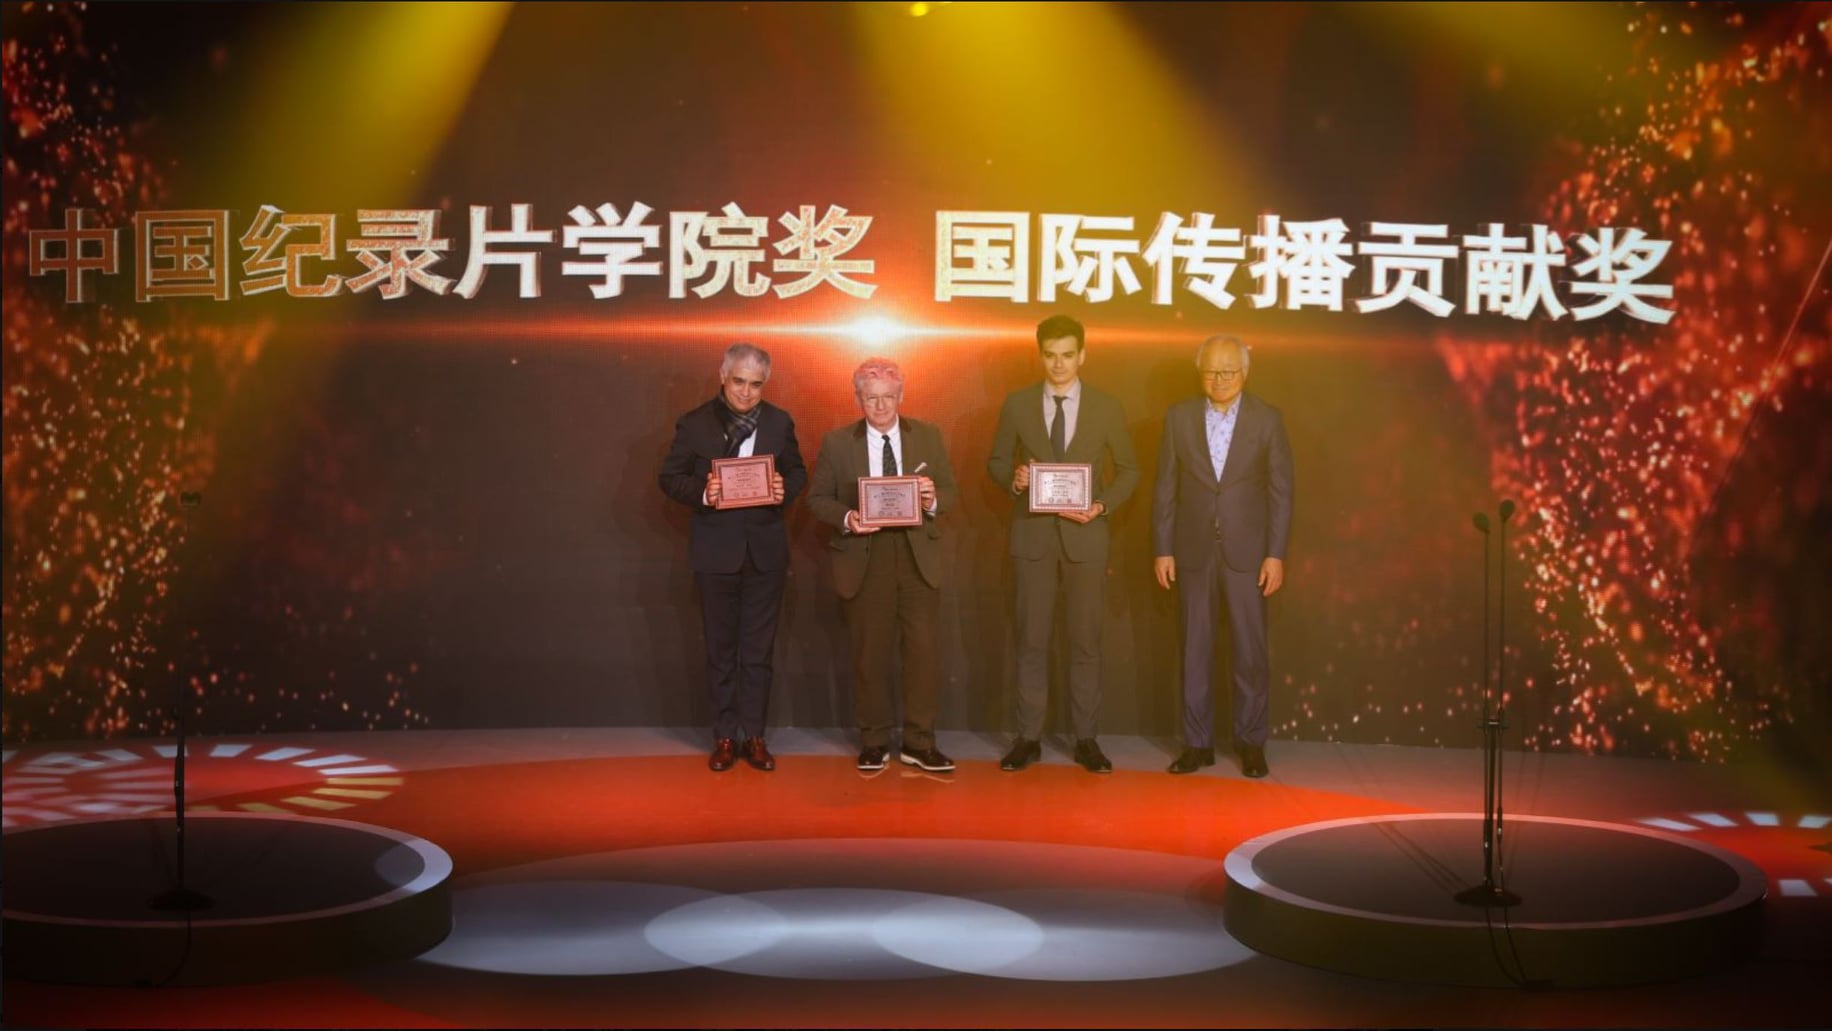 Китайская Академия документального кино вручила награду «За выдающийся вклад в развитие международных коммуникаций» Валерию Рузину